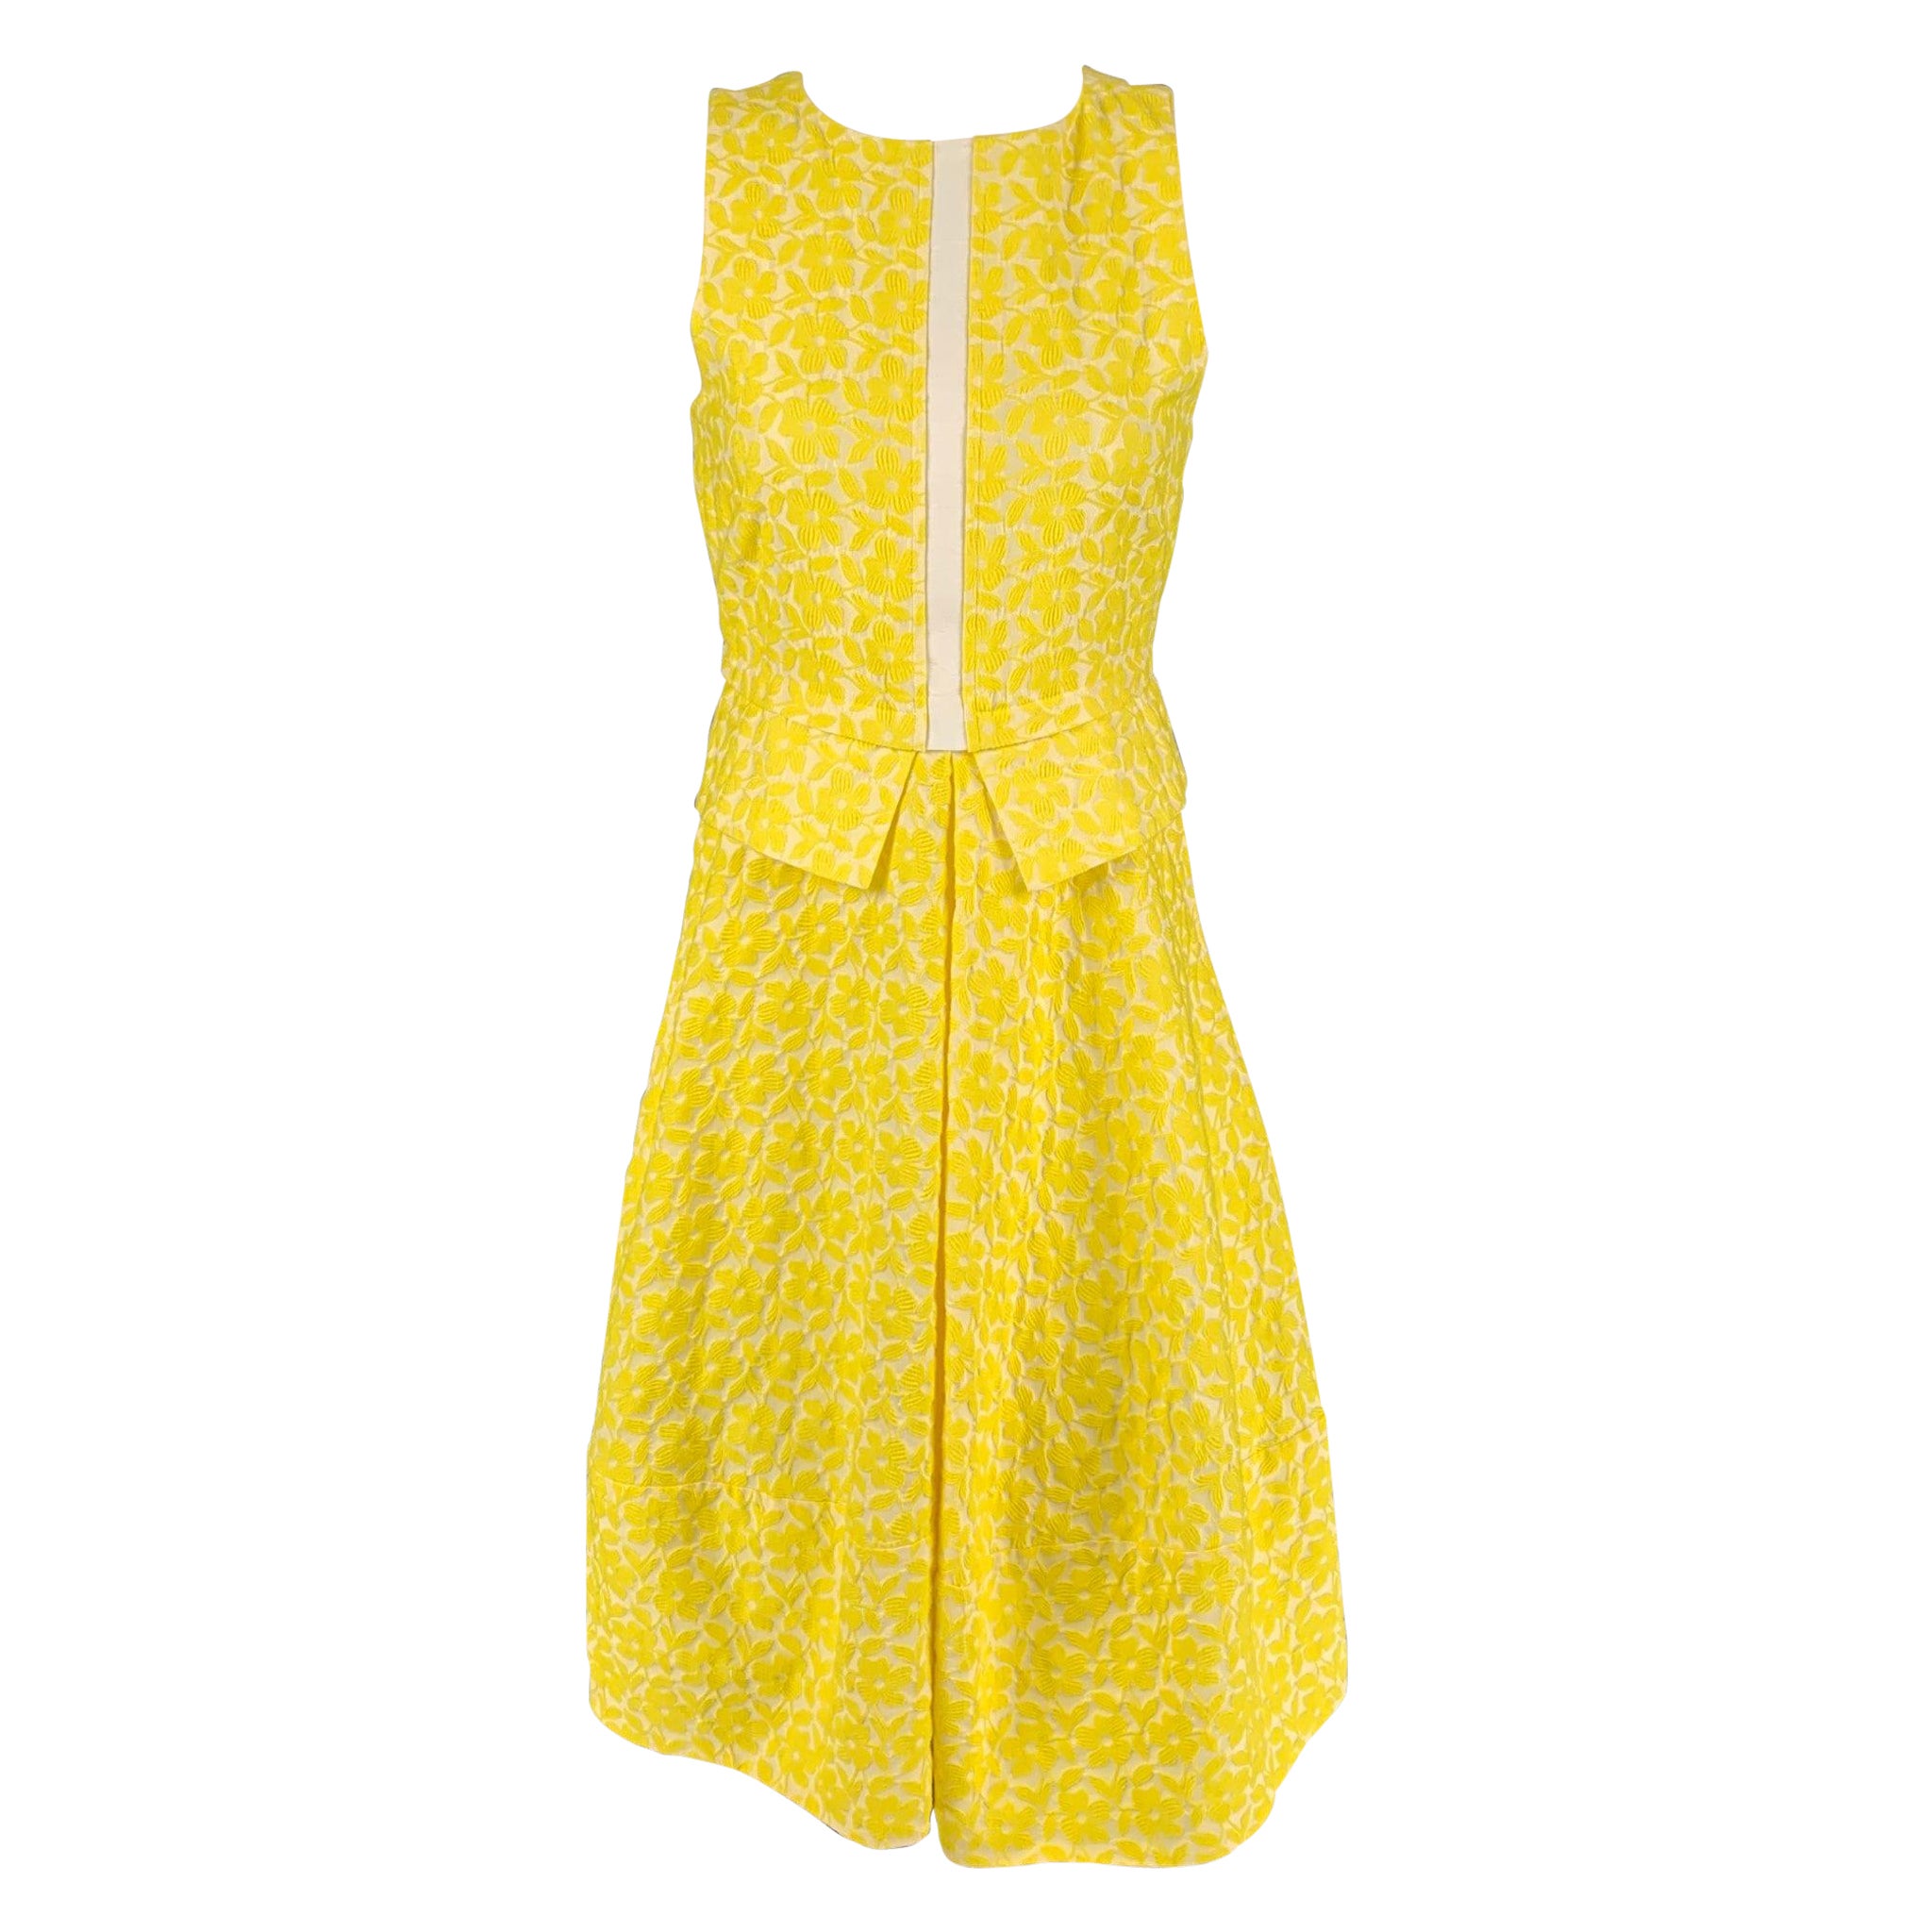 JIL SANDER Size 2 Yellow White Jacquard Cotton Blend A-Line Dress For Sale